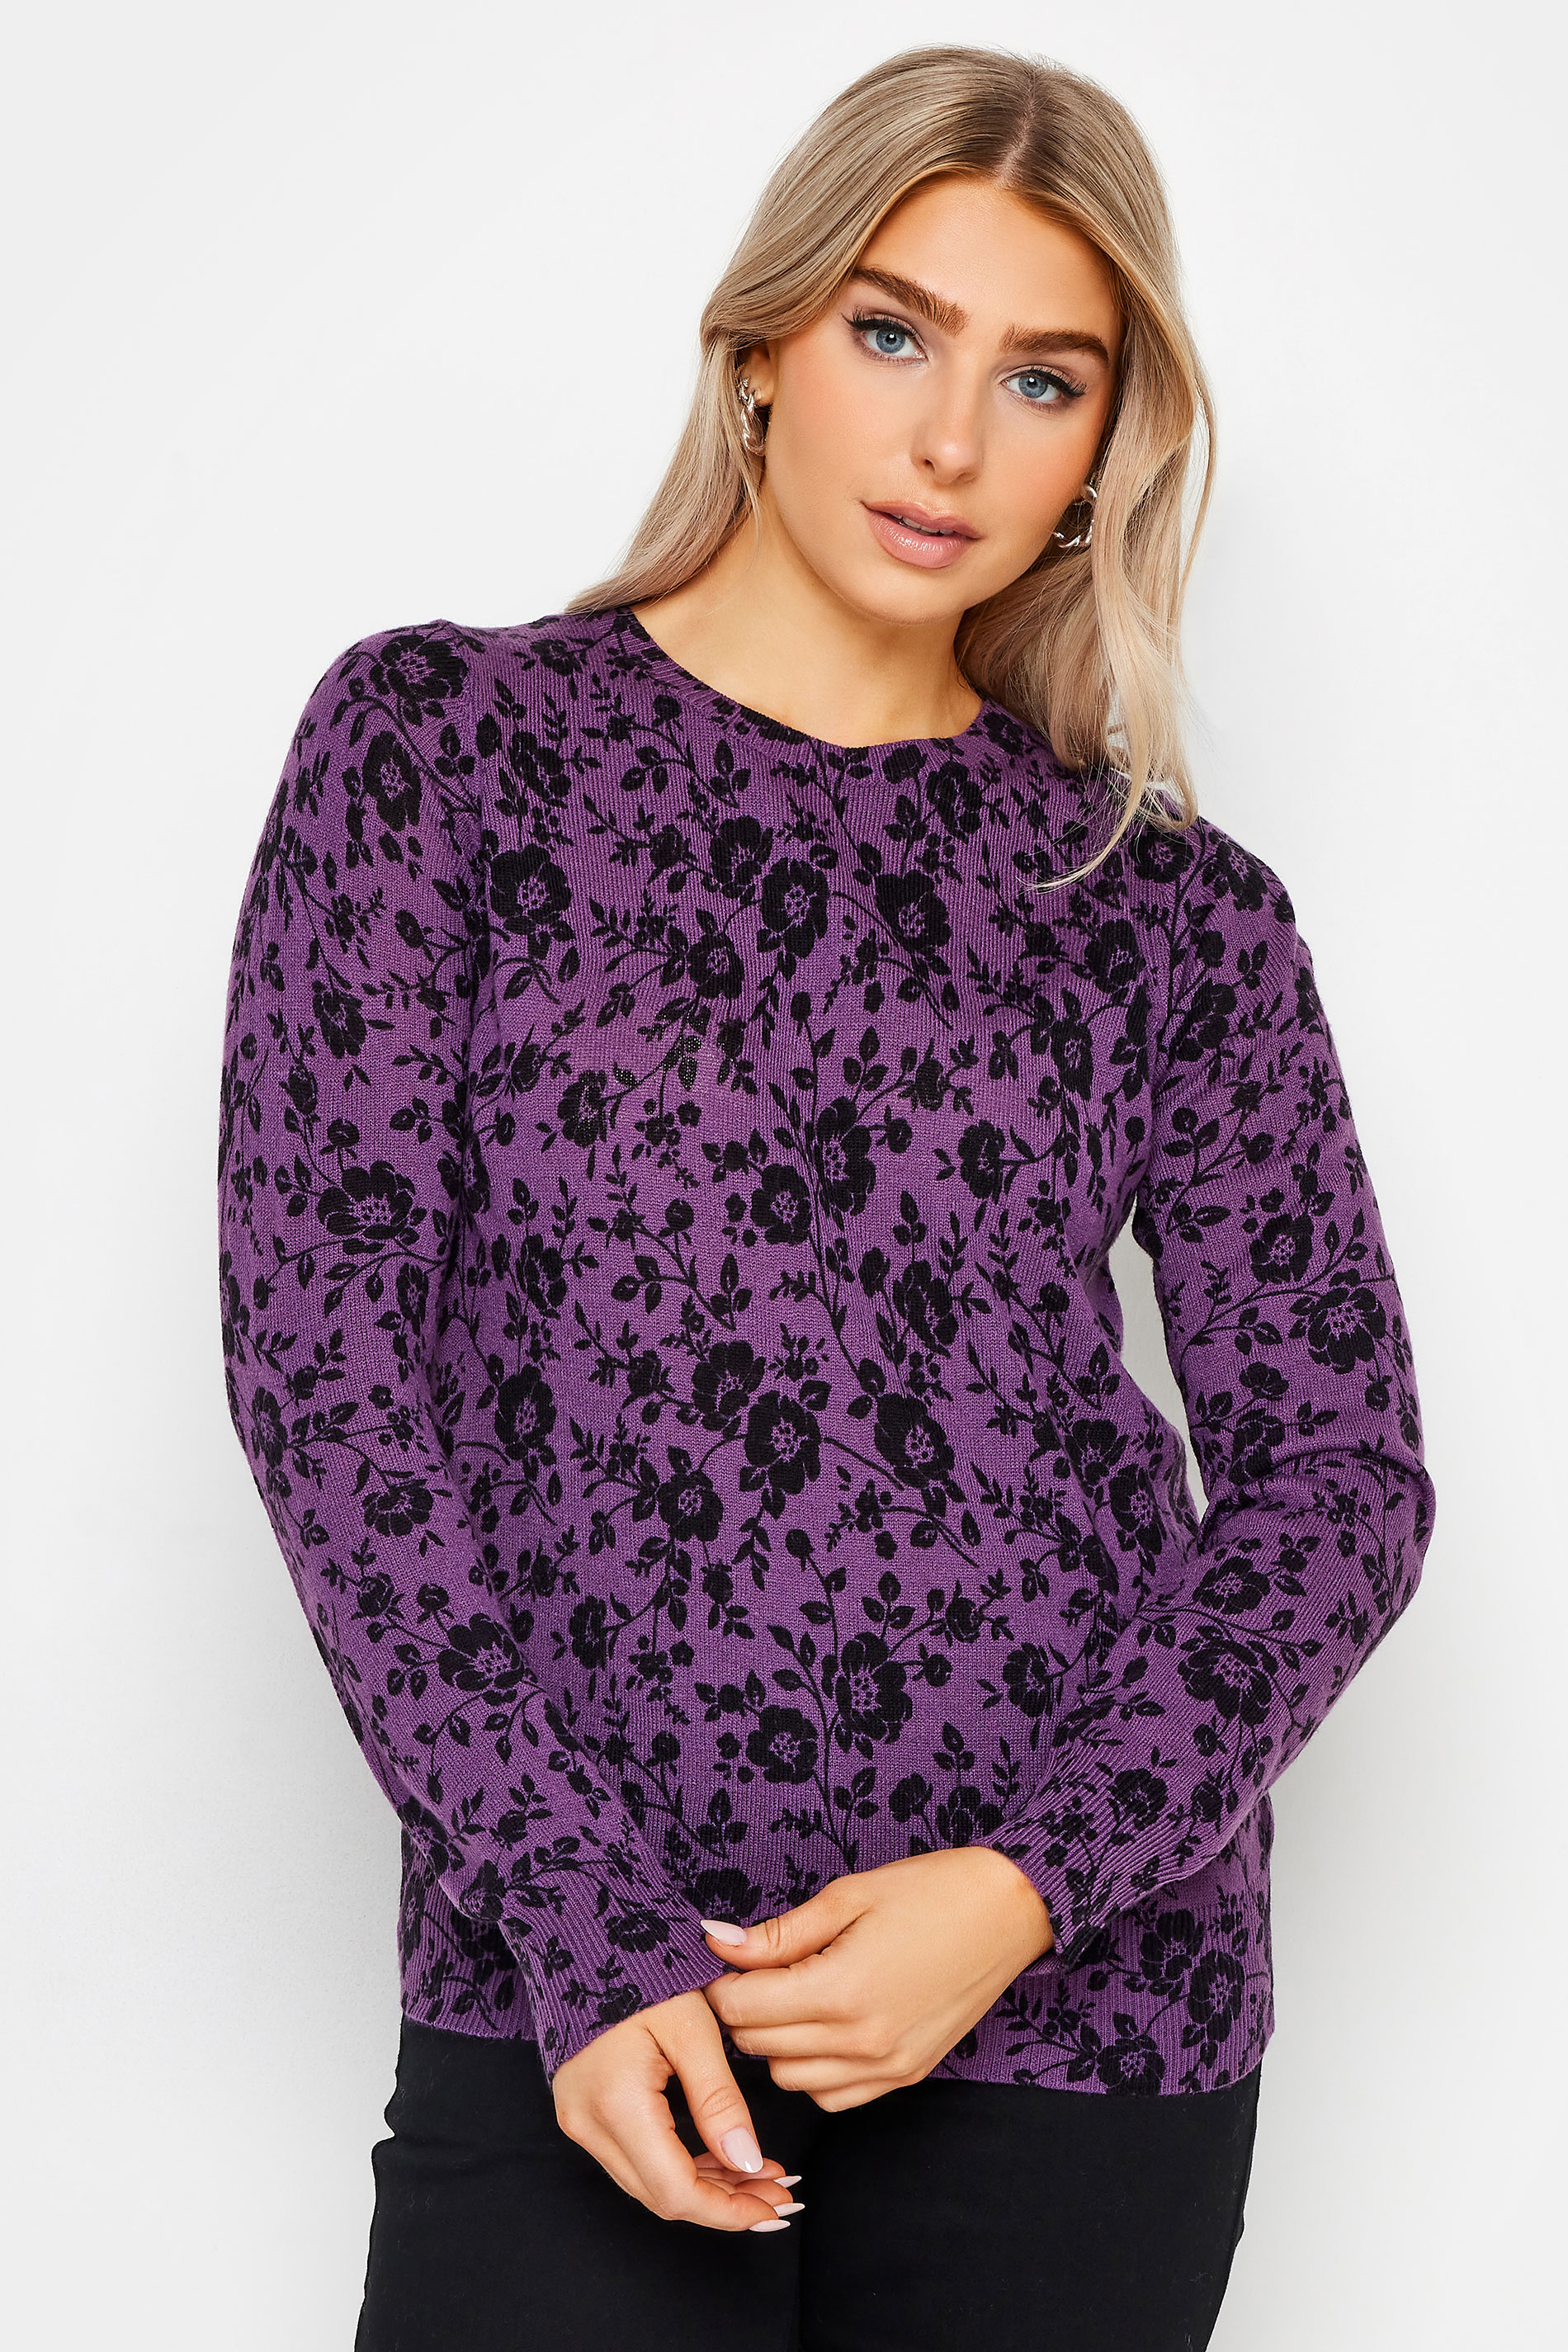 M&Co Purple Floral Print Jumper | M&Co 1